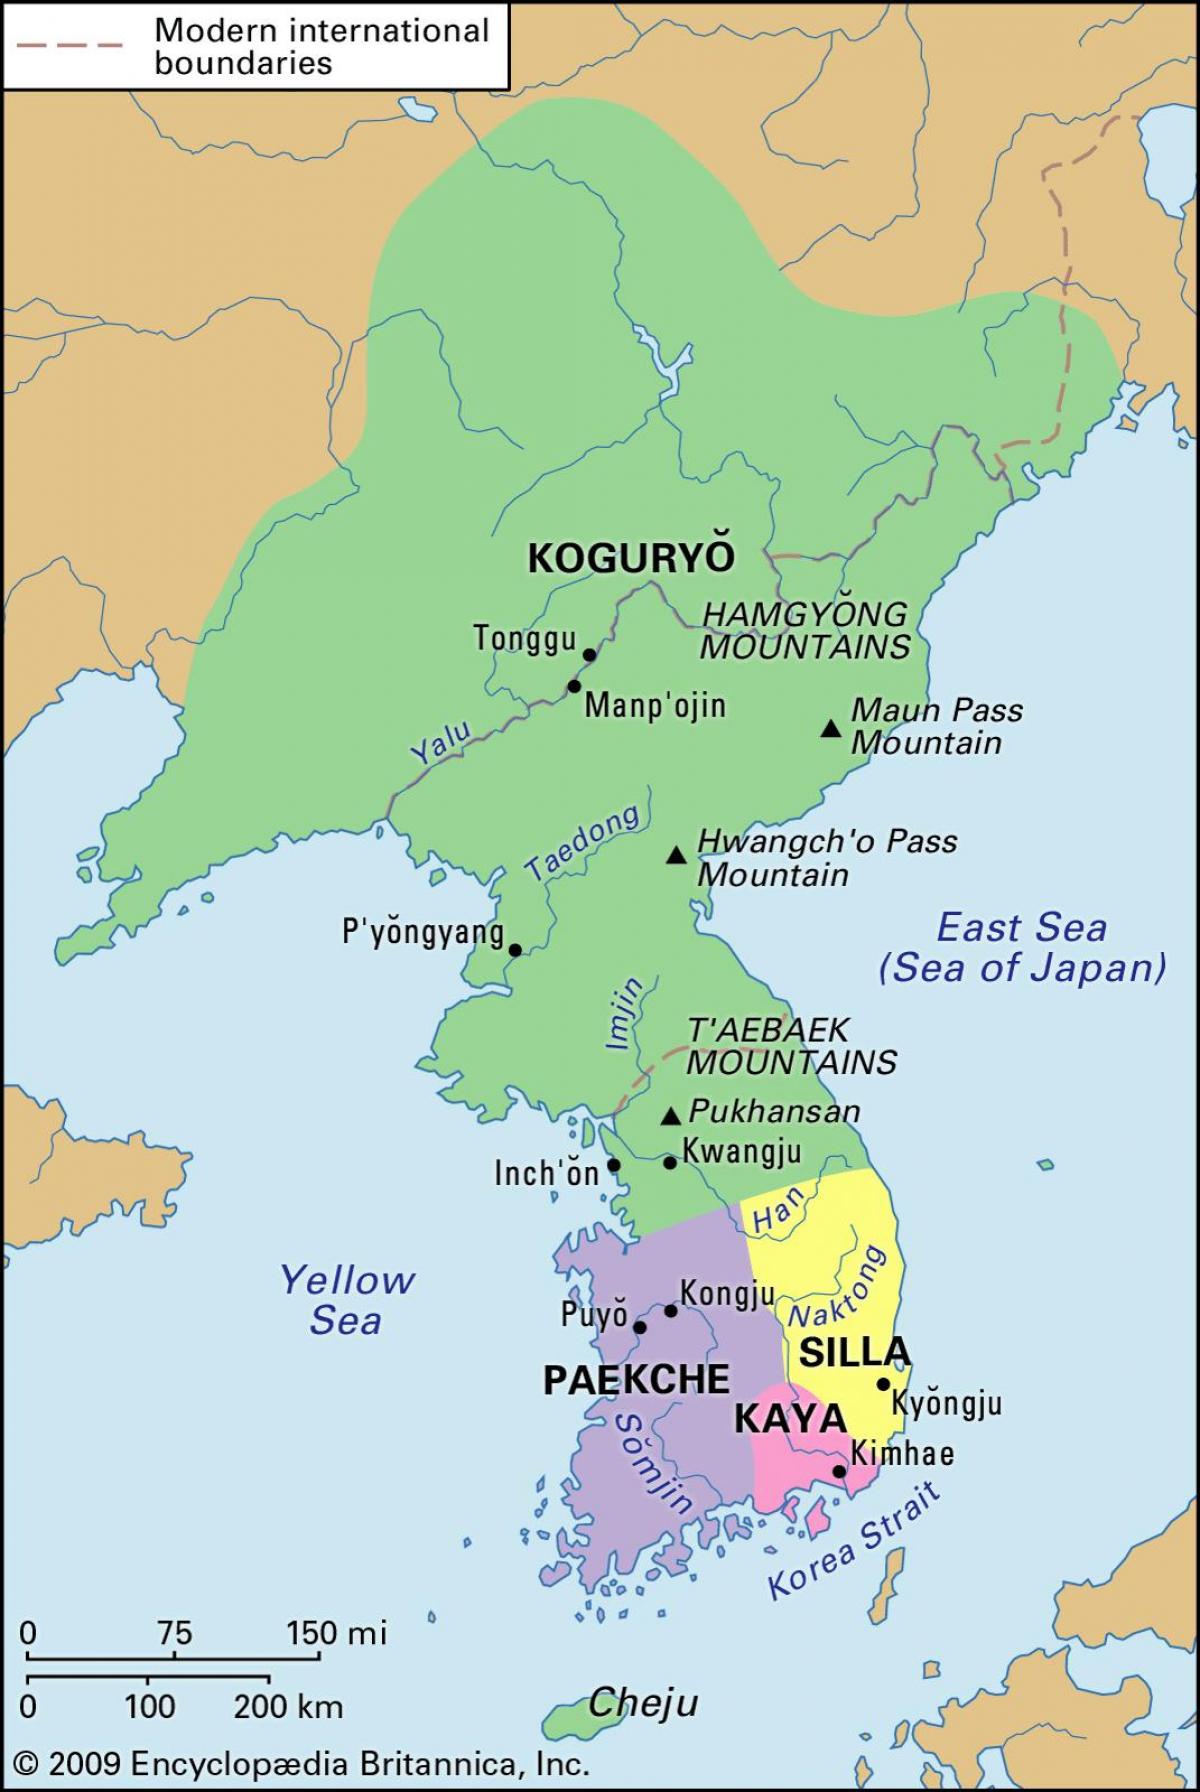 خريطة تاريخية لكوريا الجنوبية (جمهورية كوريا)